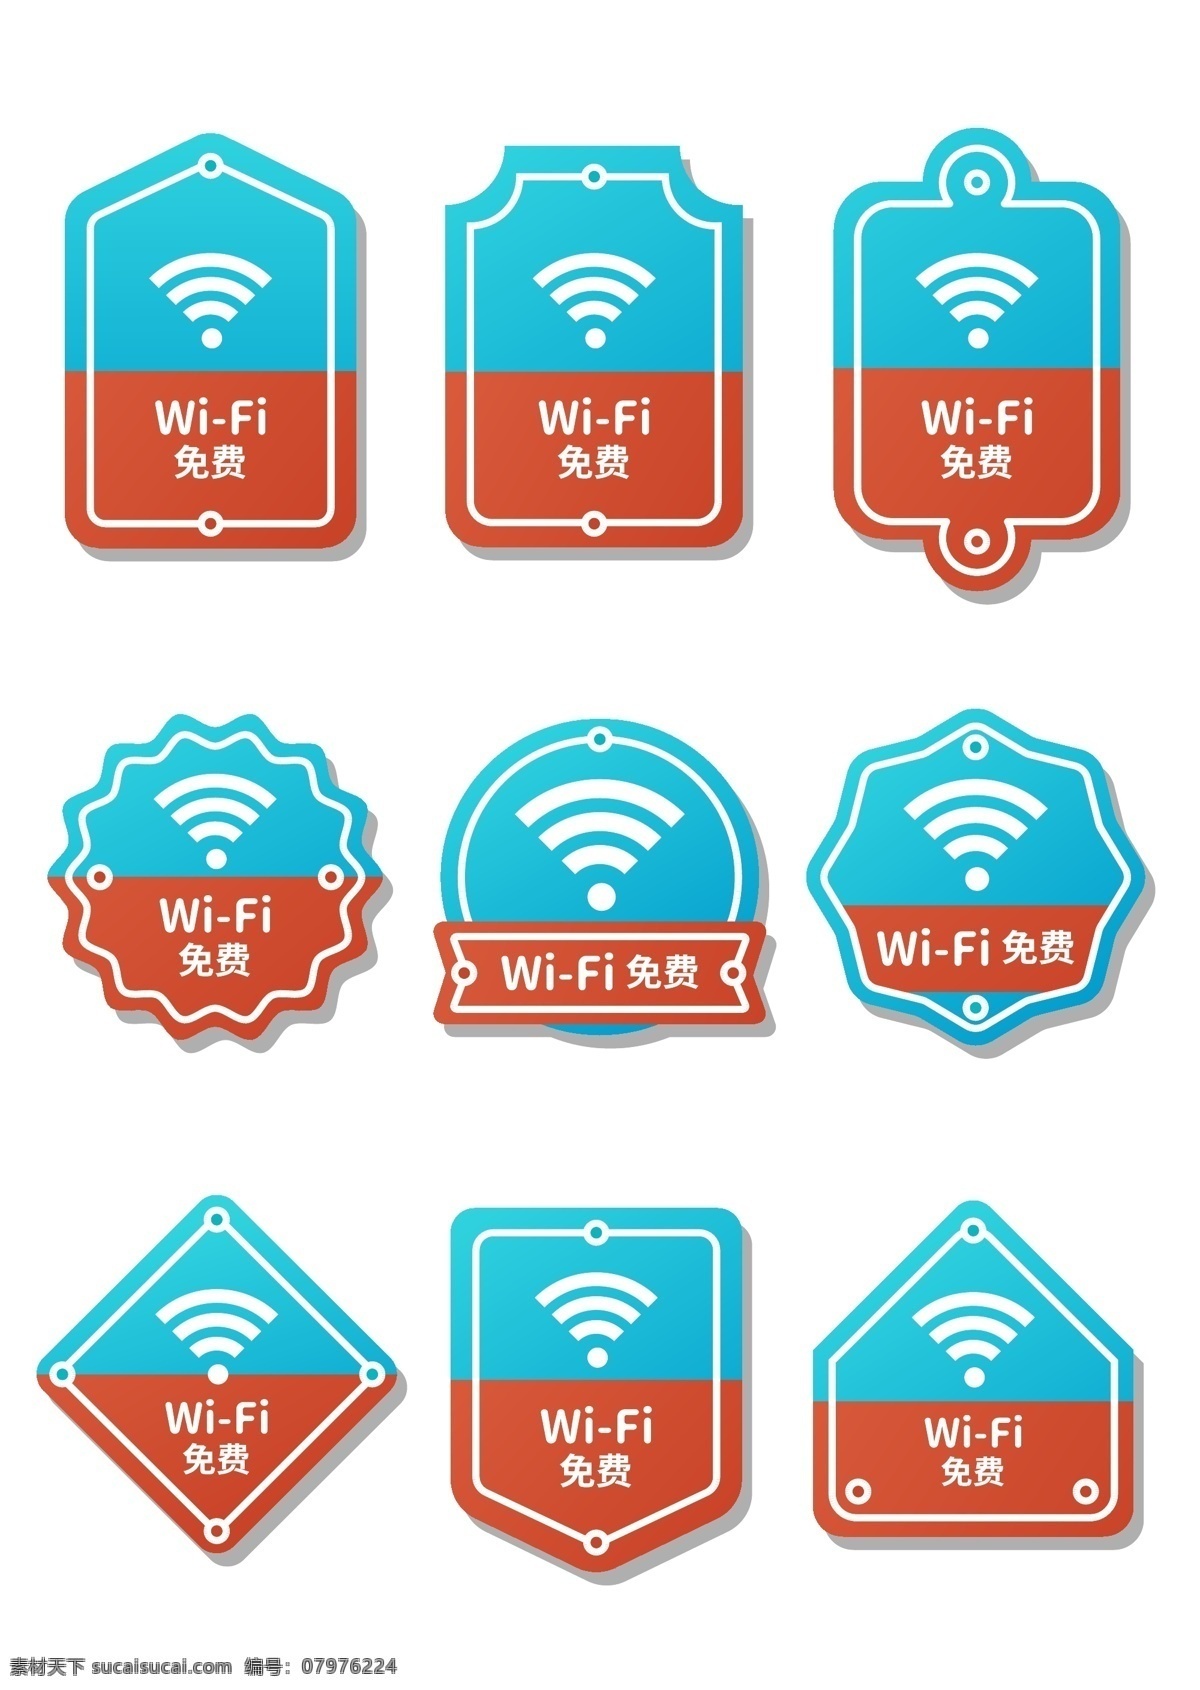 vi 导 视 免费 wifi 信号 图标 导视 wifi信号 开放标识 图标蓝色 标志图标 公共标识标志